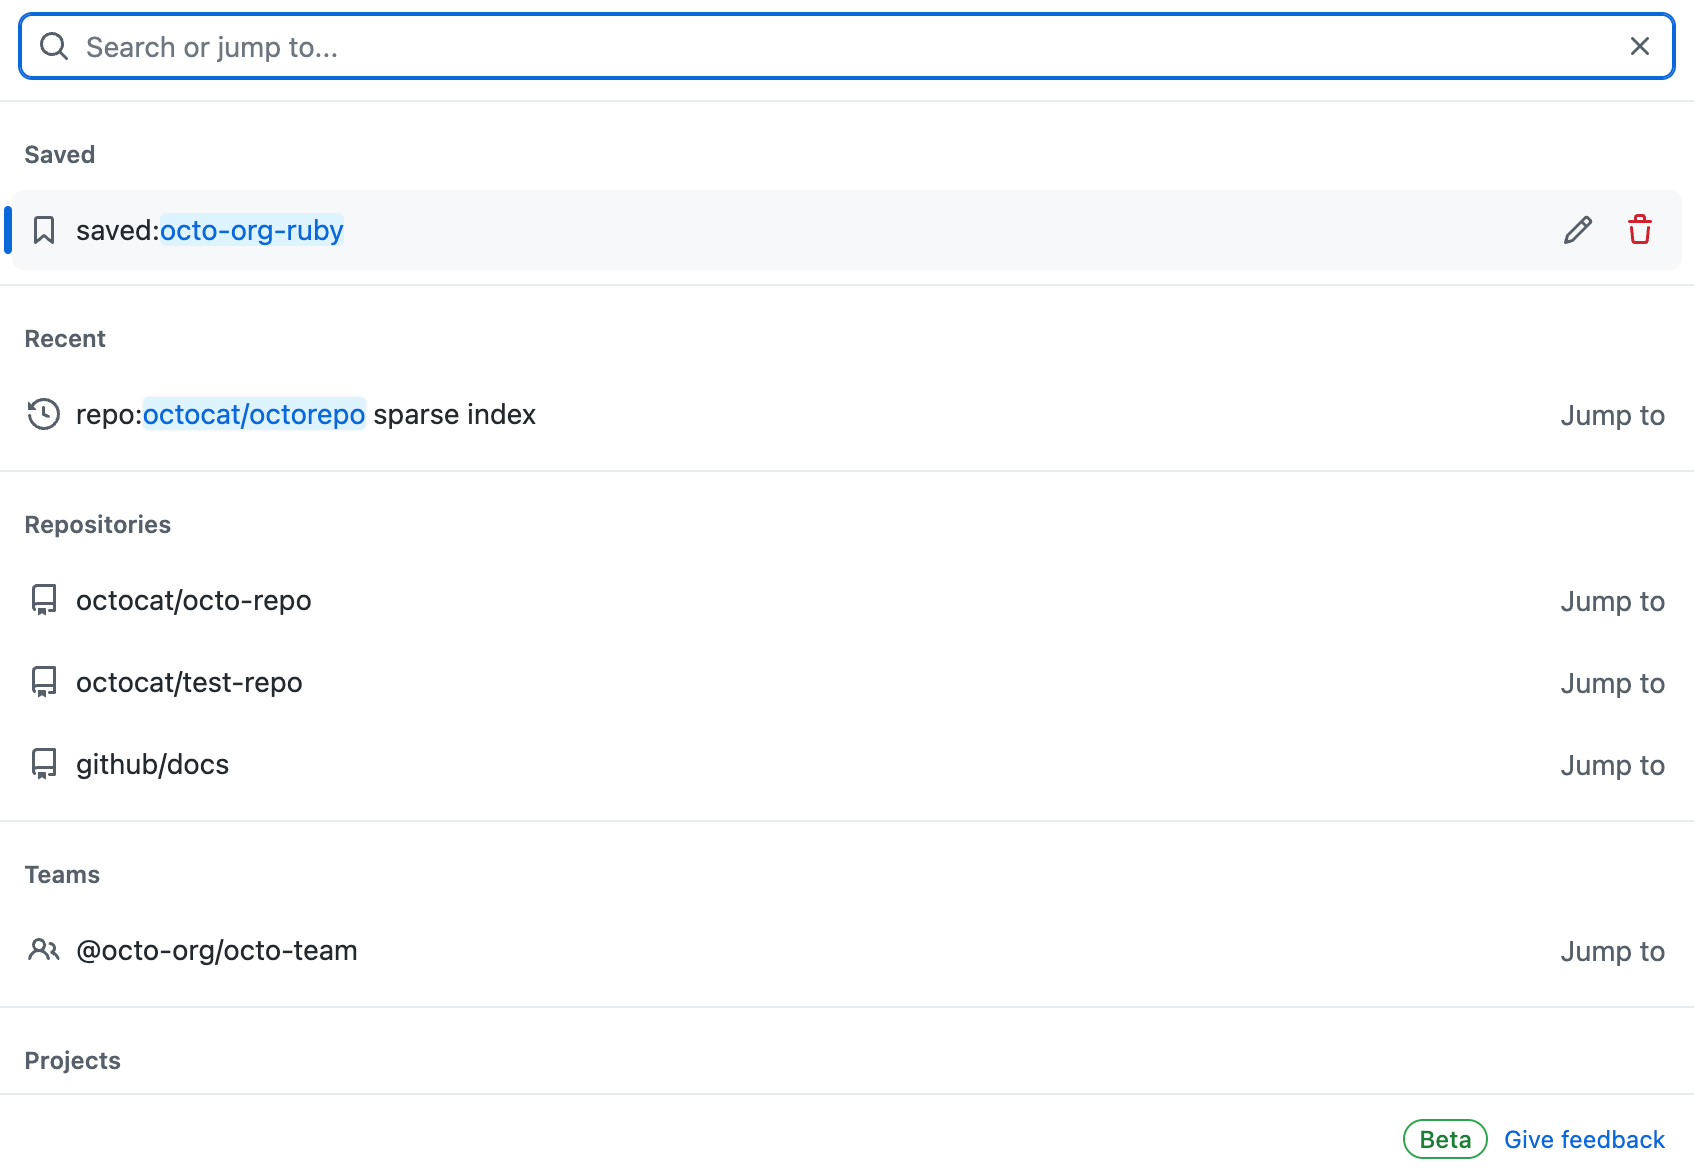 Captura de tela da barra de pesquisa do GitHub. Há uma lista de sugestões de pesquisa por categoria abaixo da barra de pesquisa.